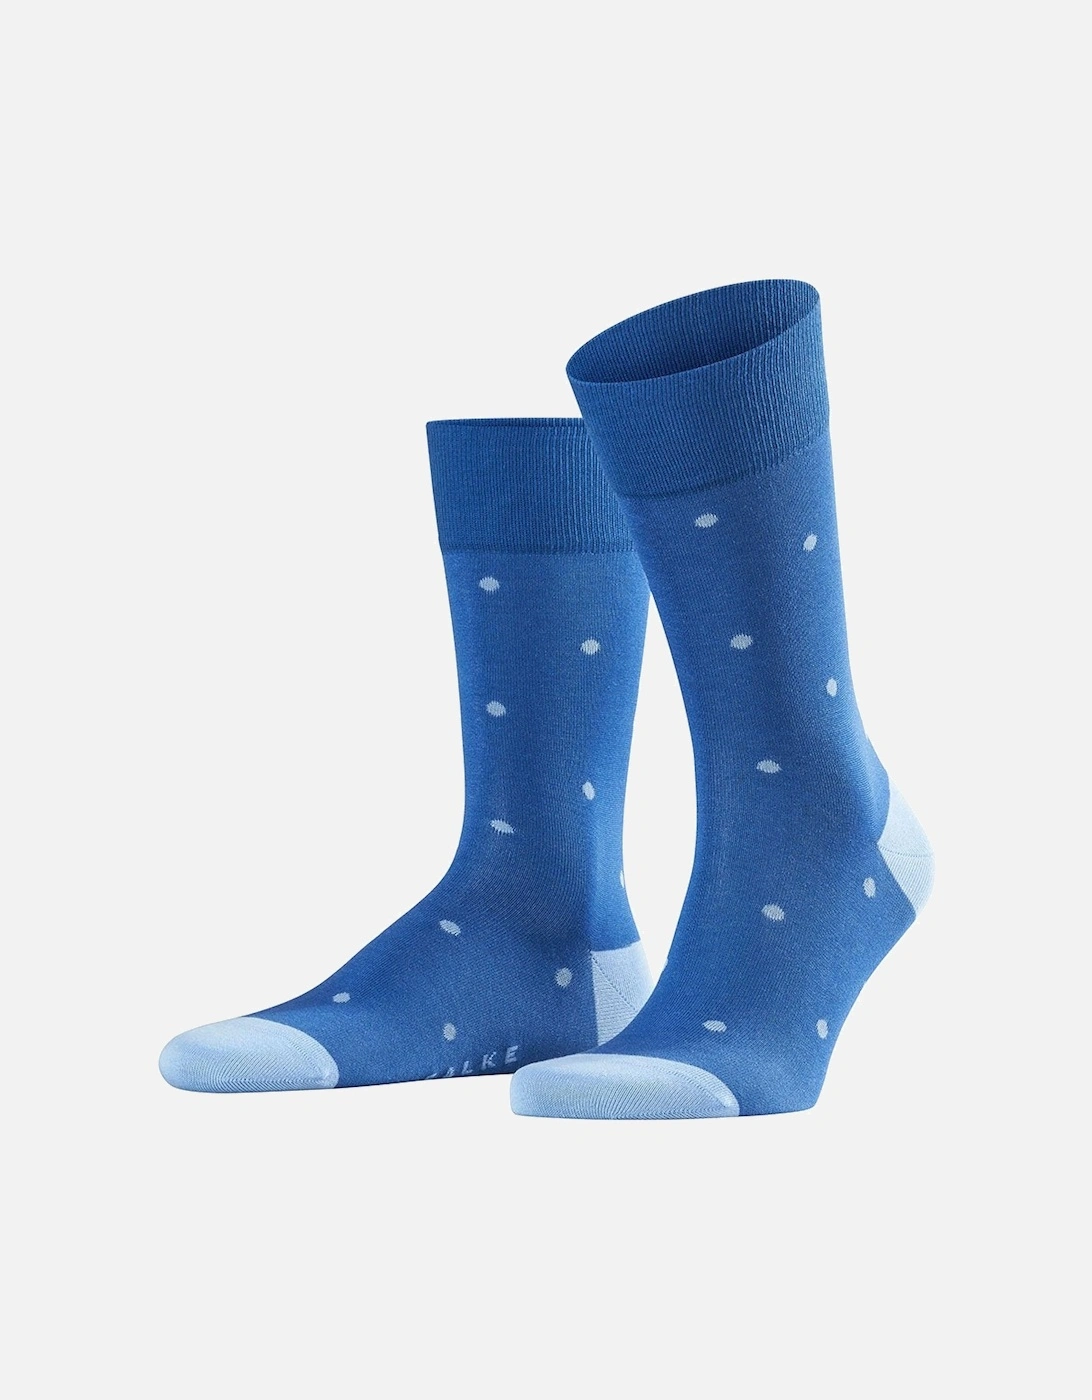 Dot Men's Socks, 2 of 1